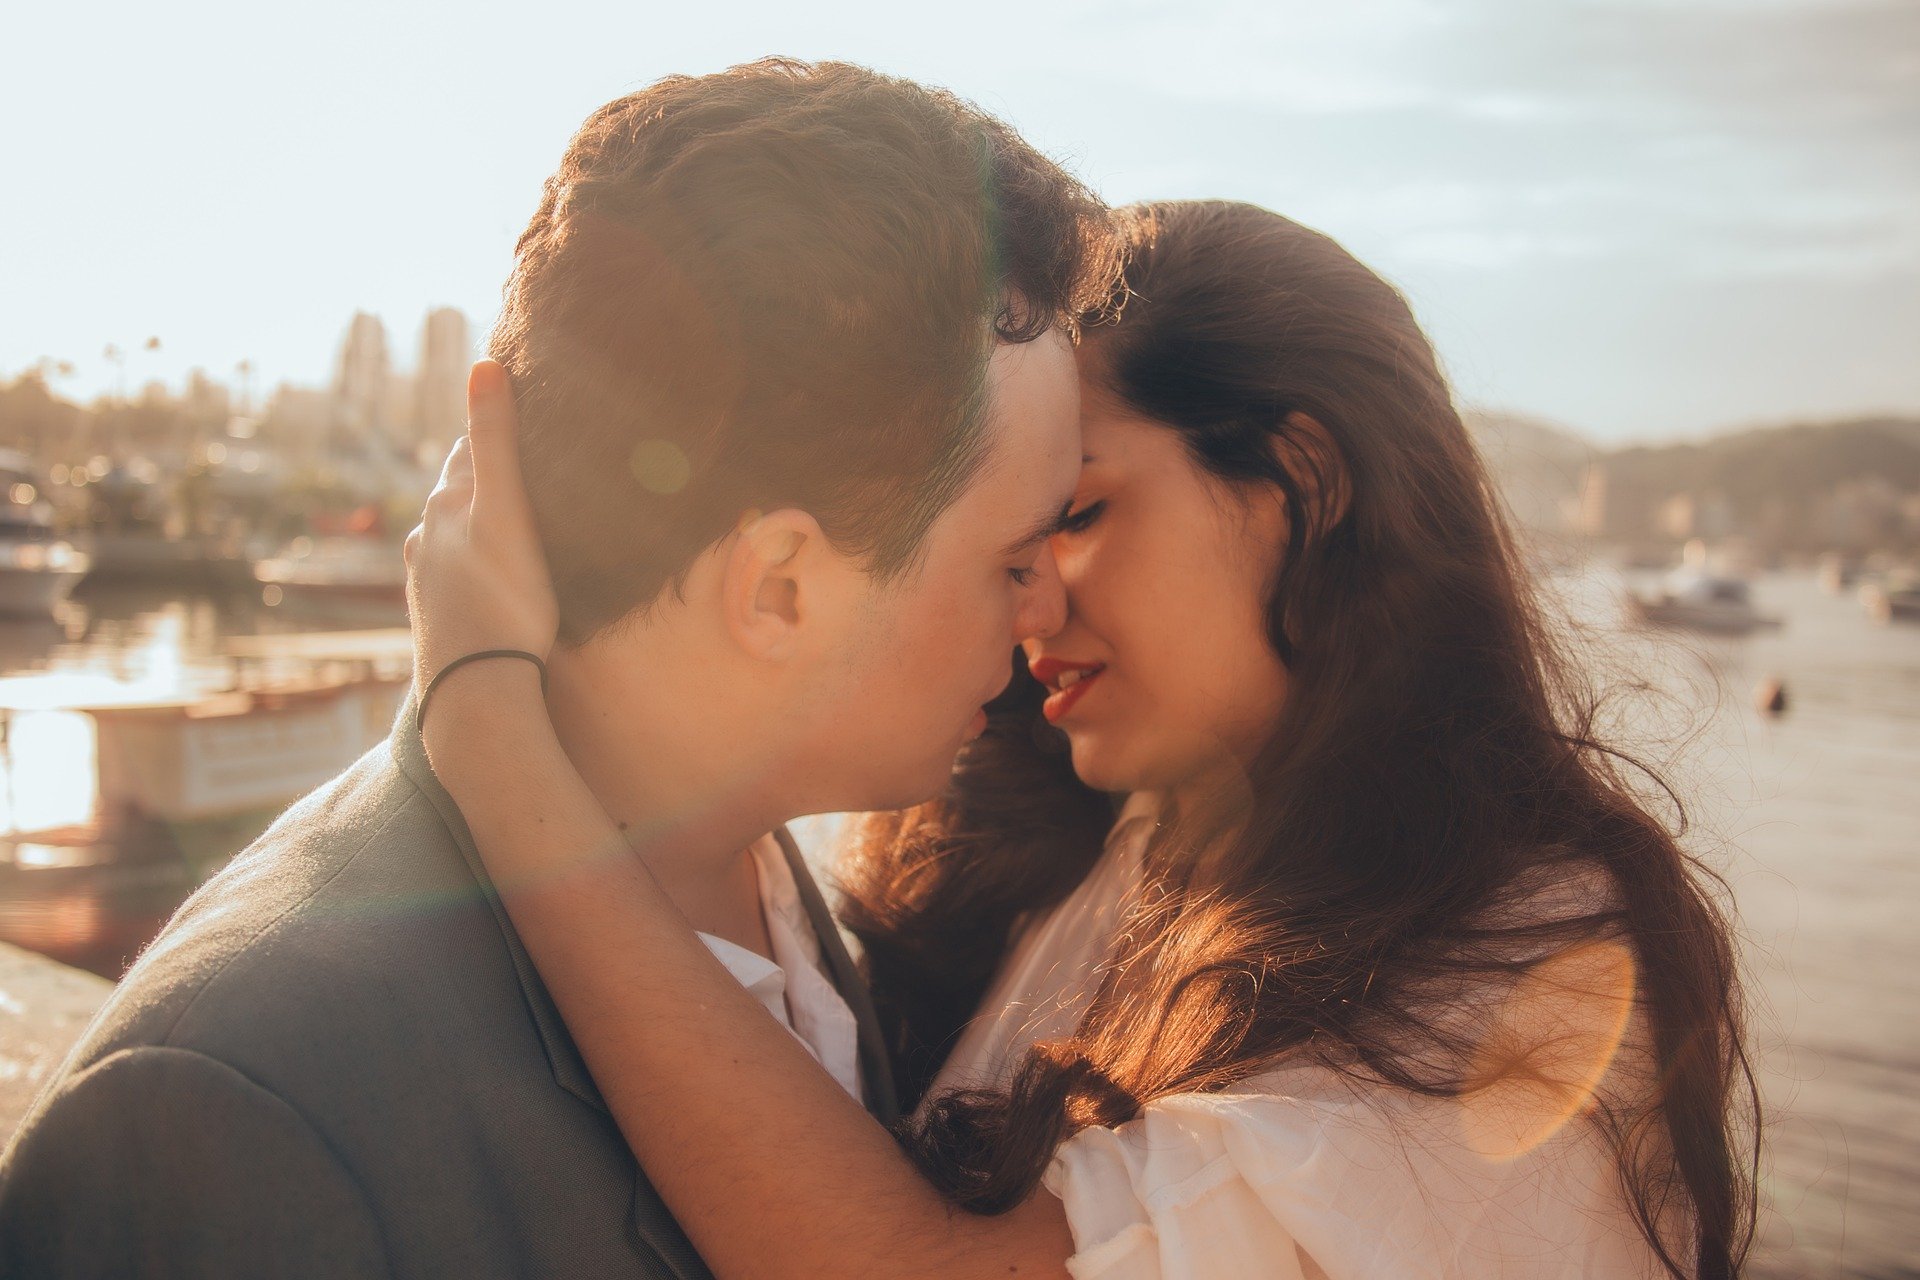 Homem e mulher com os rostos próximos, quase se beijando